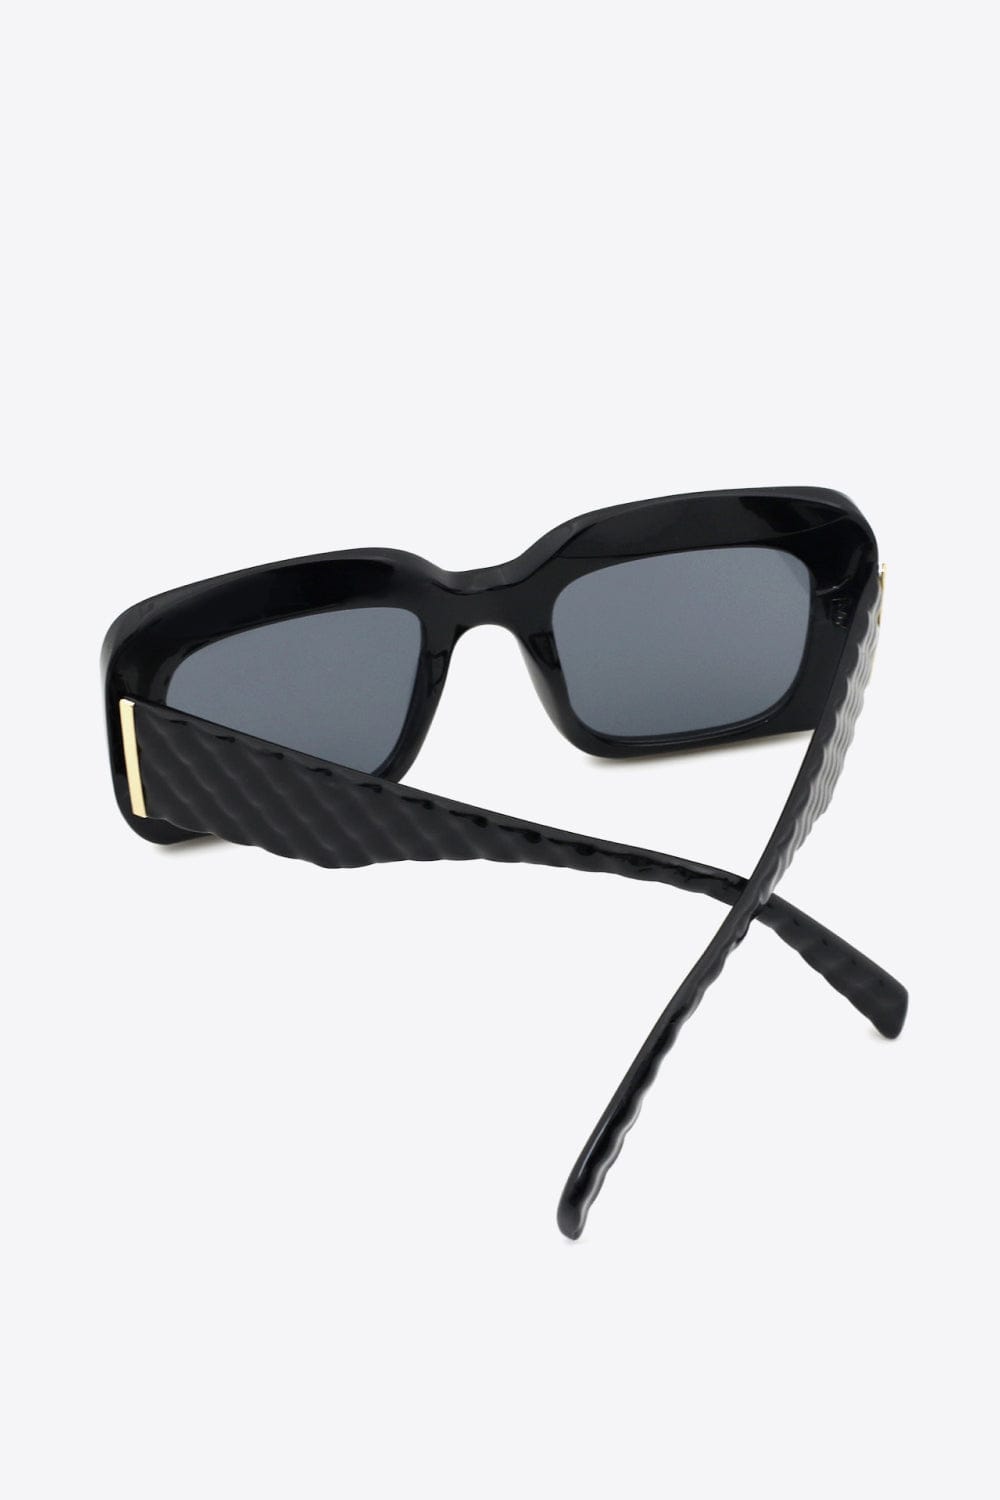 Square Polycarbonate UV400 Sunglasses - Body By J'ne